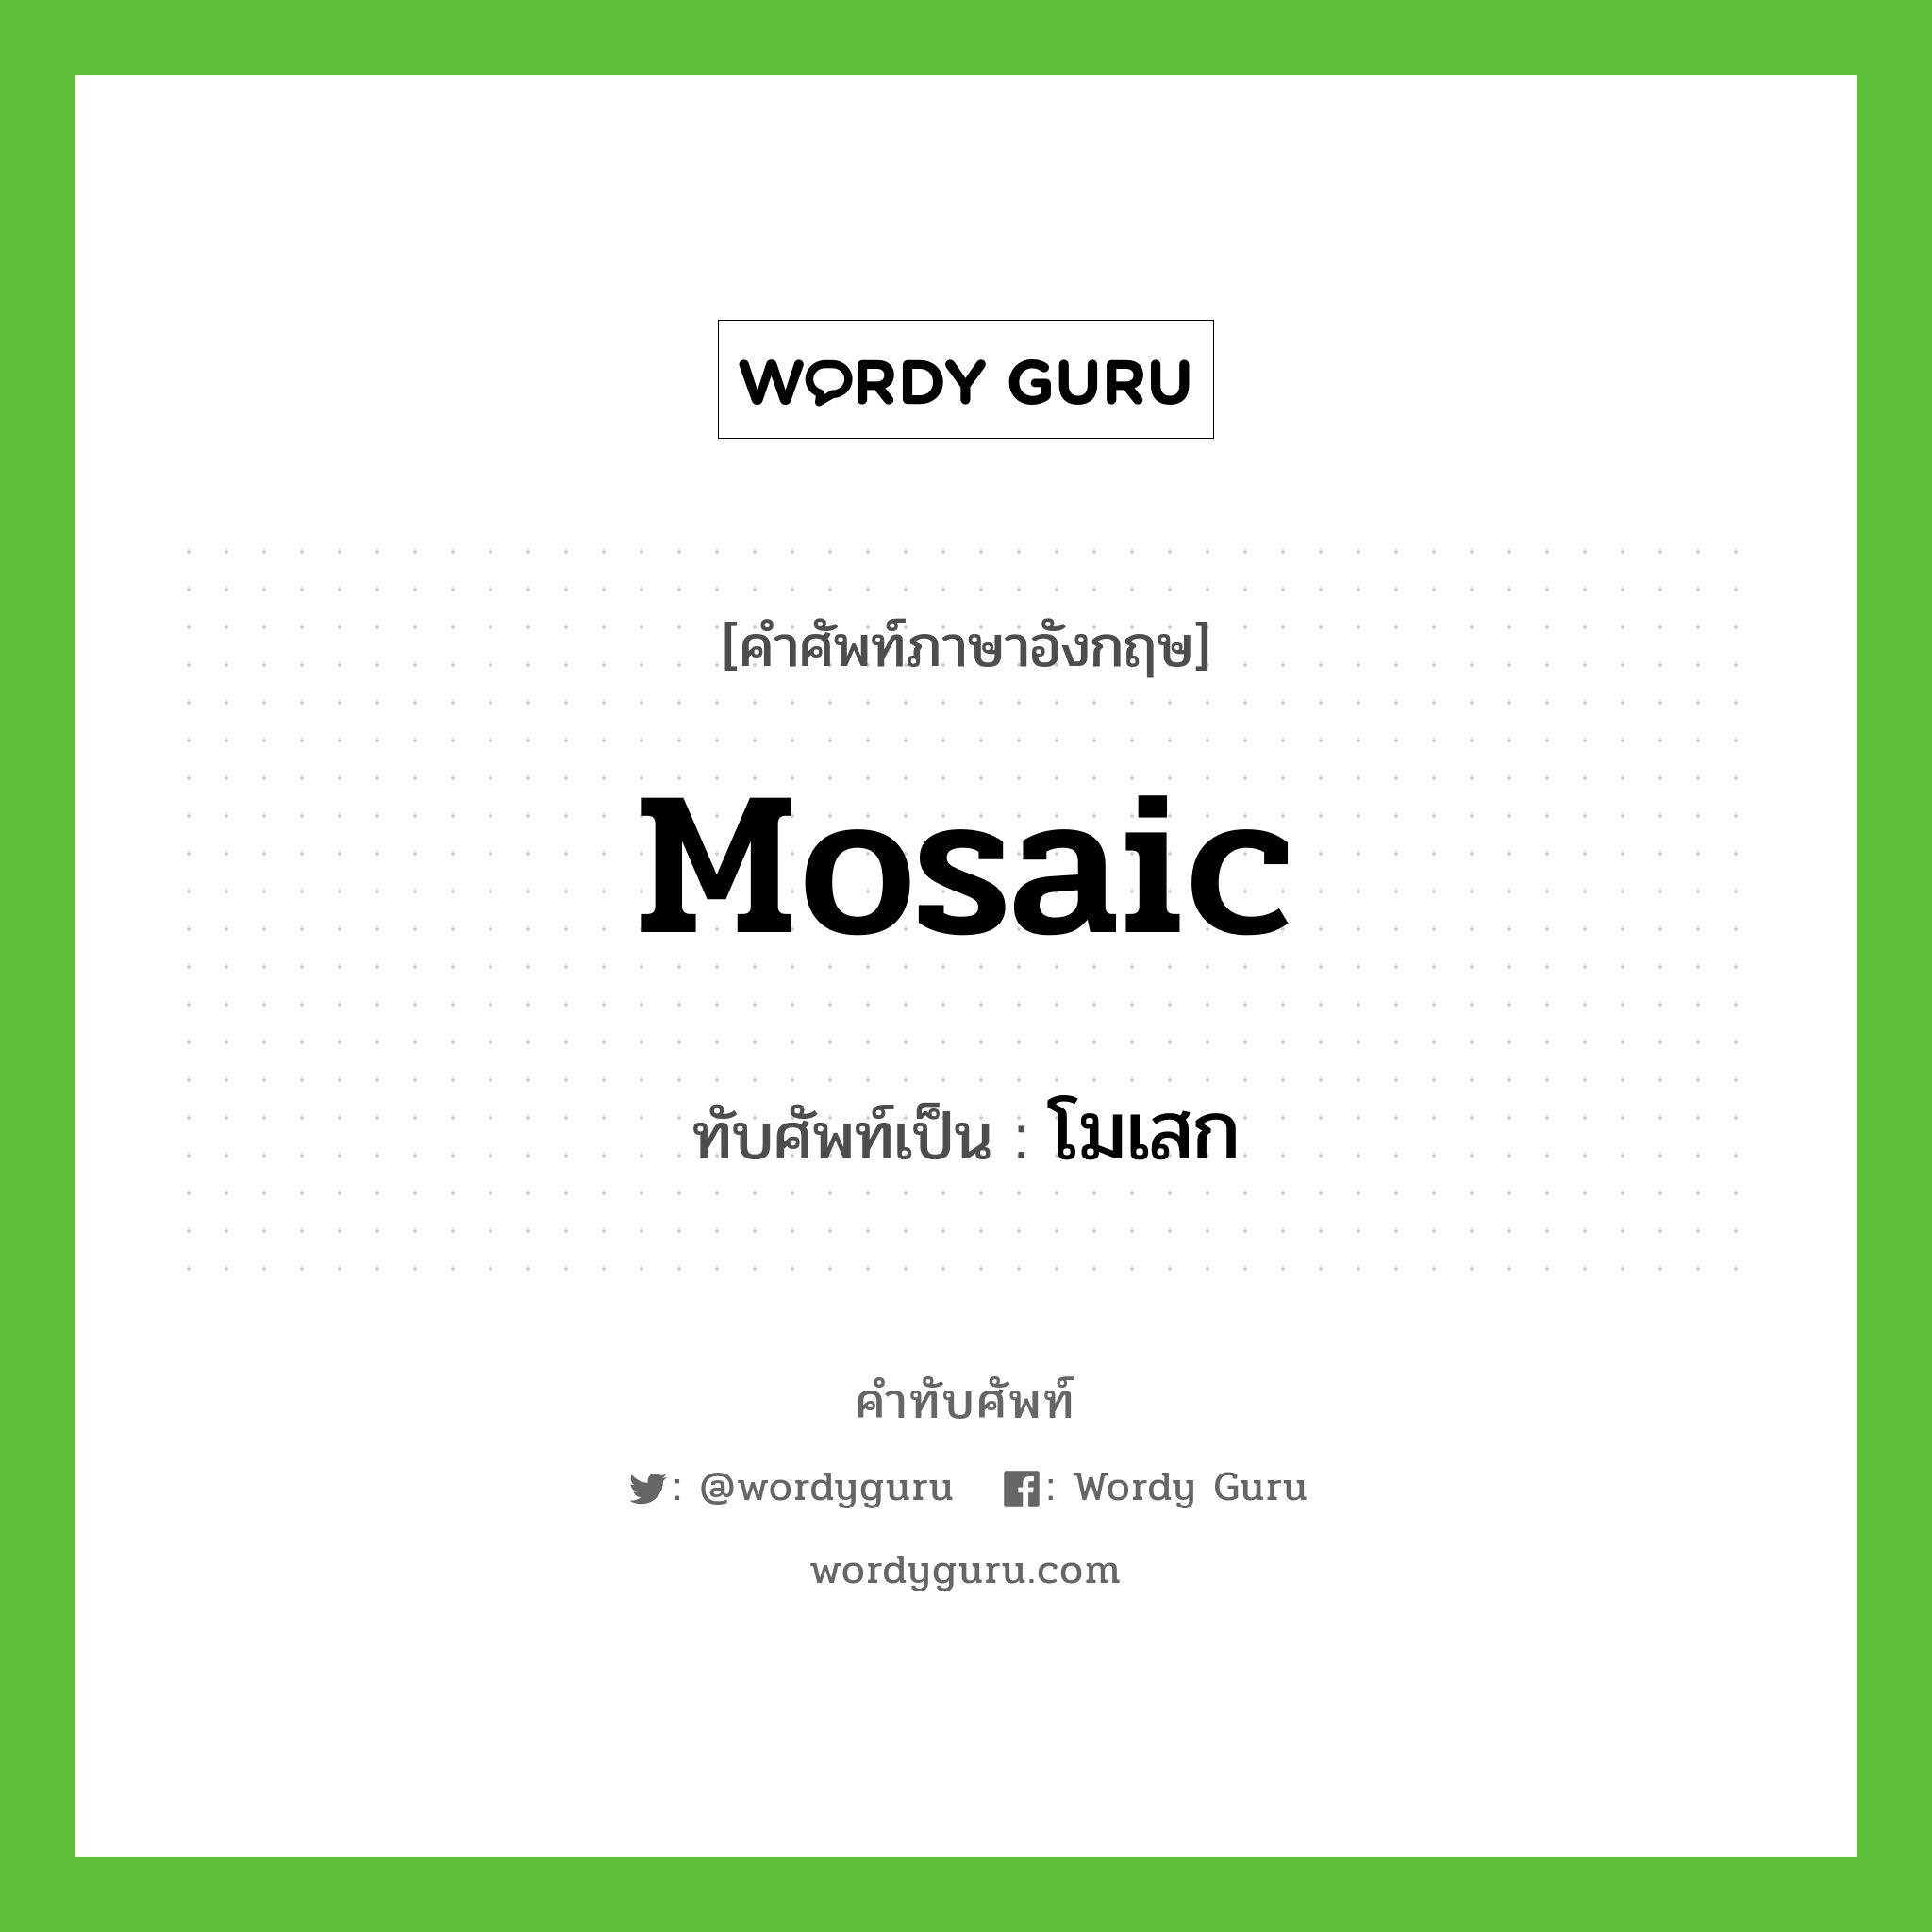 mosaic เขียนเป็นคำไทยว่าอะไร?, คำศัพท์ภาษาอังกฤษ mosaic ทับศัพท์เป็น โมเสก